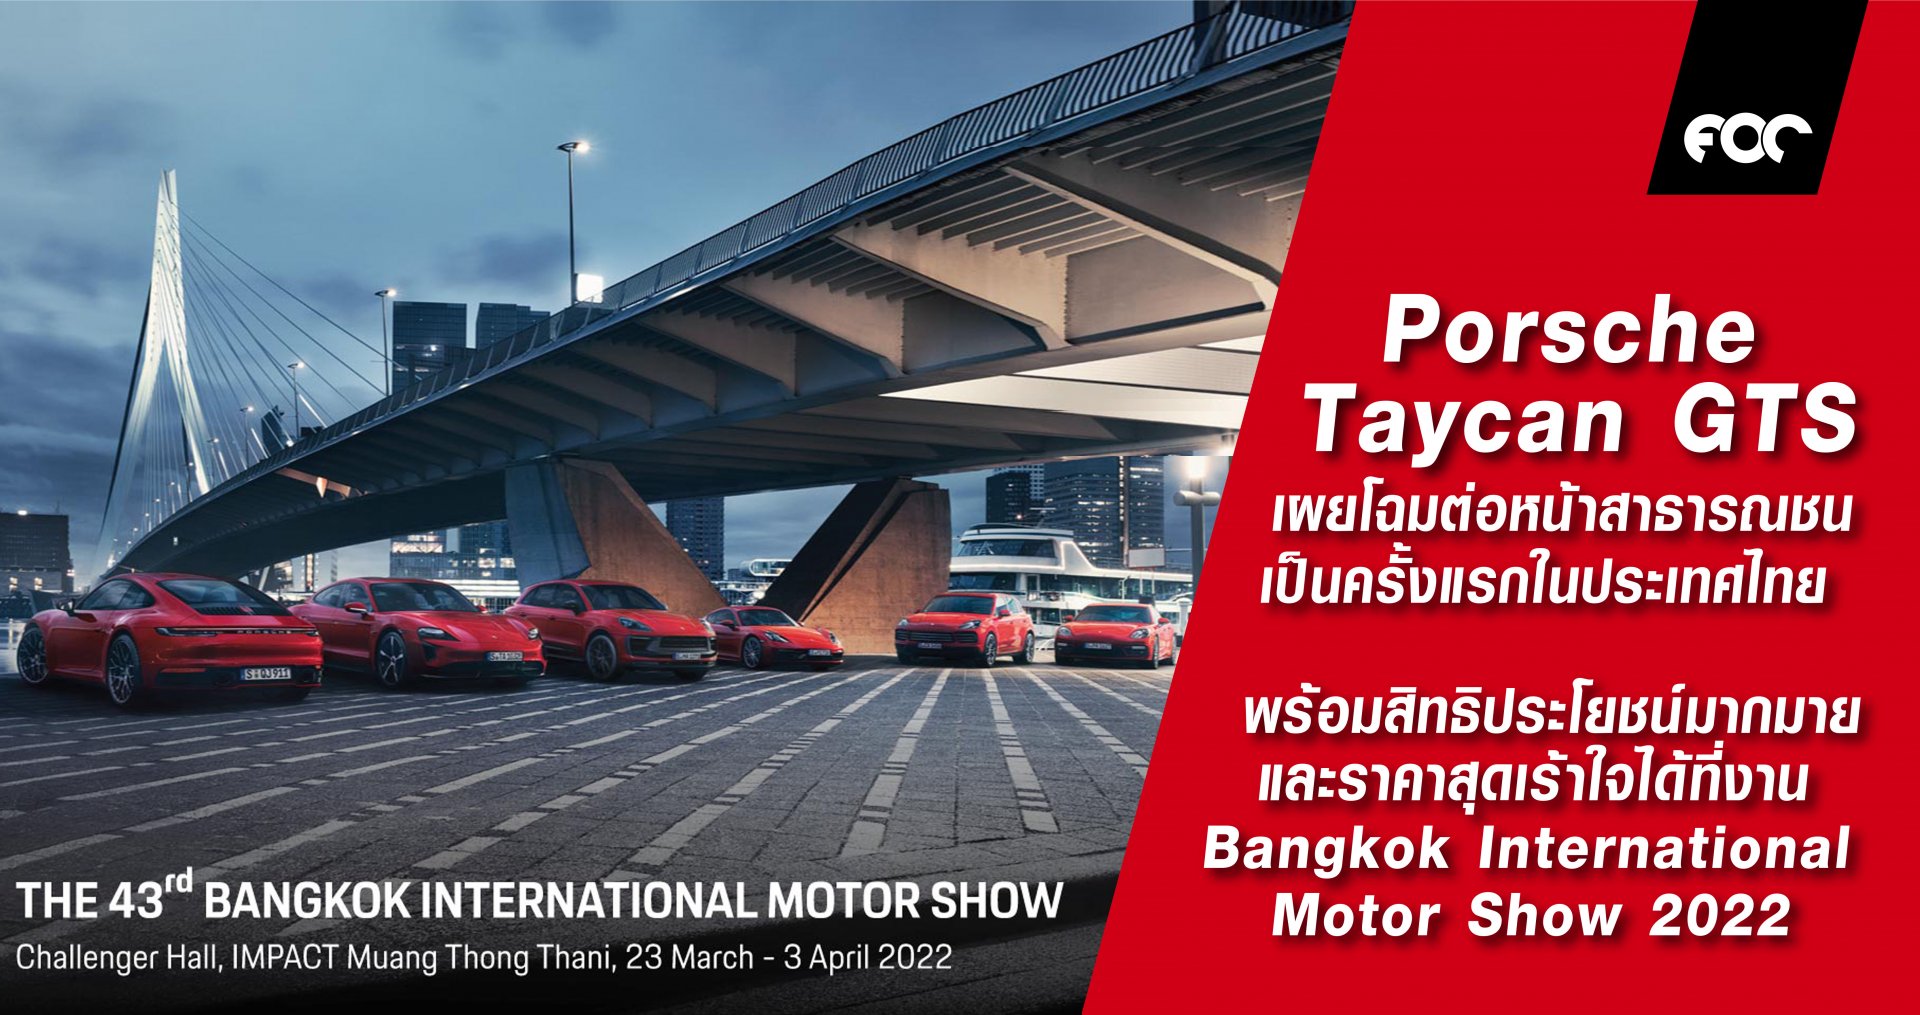 เตรียมพบกับทัพรถสปอร์ตปอร์เช่หลากหลายรุ่น พร้อมสิทธิประโยชน์มากมาย และราคาสุดเร้าใจได้ที่งาน Bangkok  International Motor Show 2022